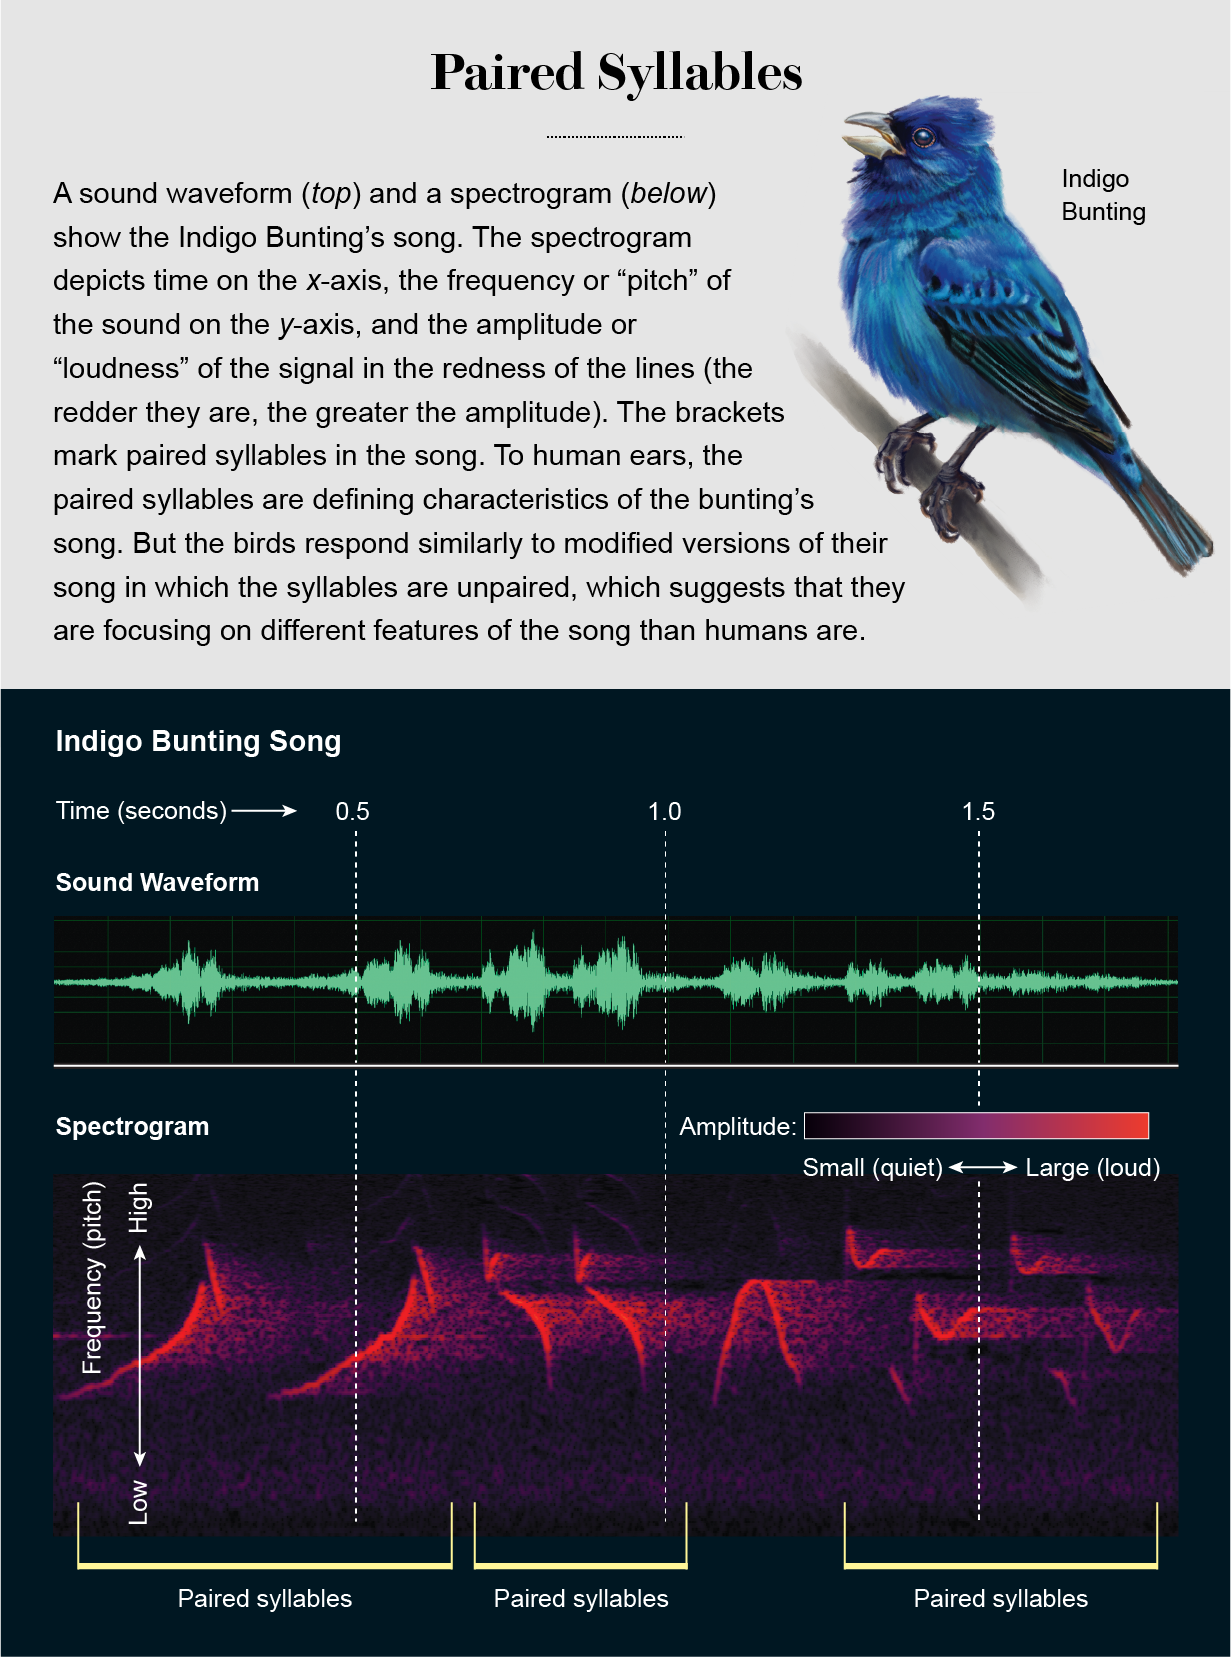 声音波形和声谱图显示了靛蓝彩旗歌曲和突出的成对音节被人的耳朵感知。